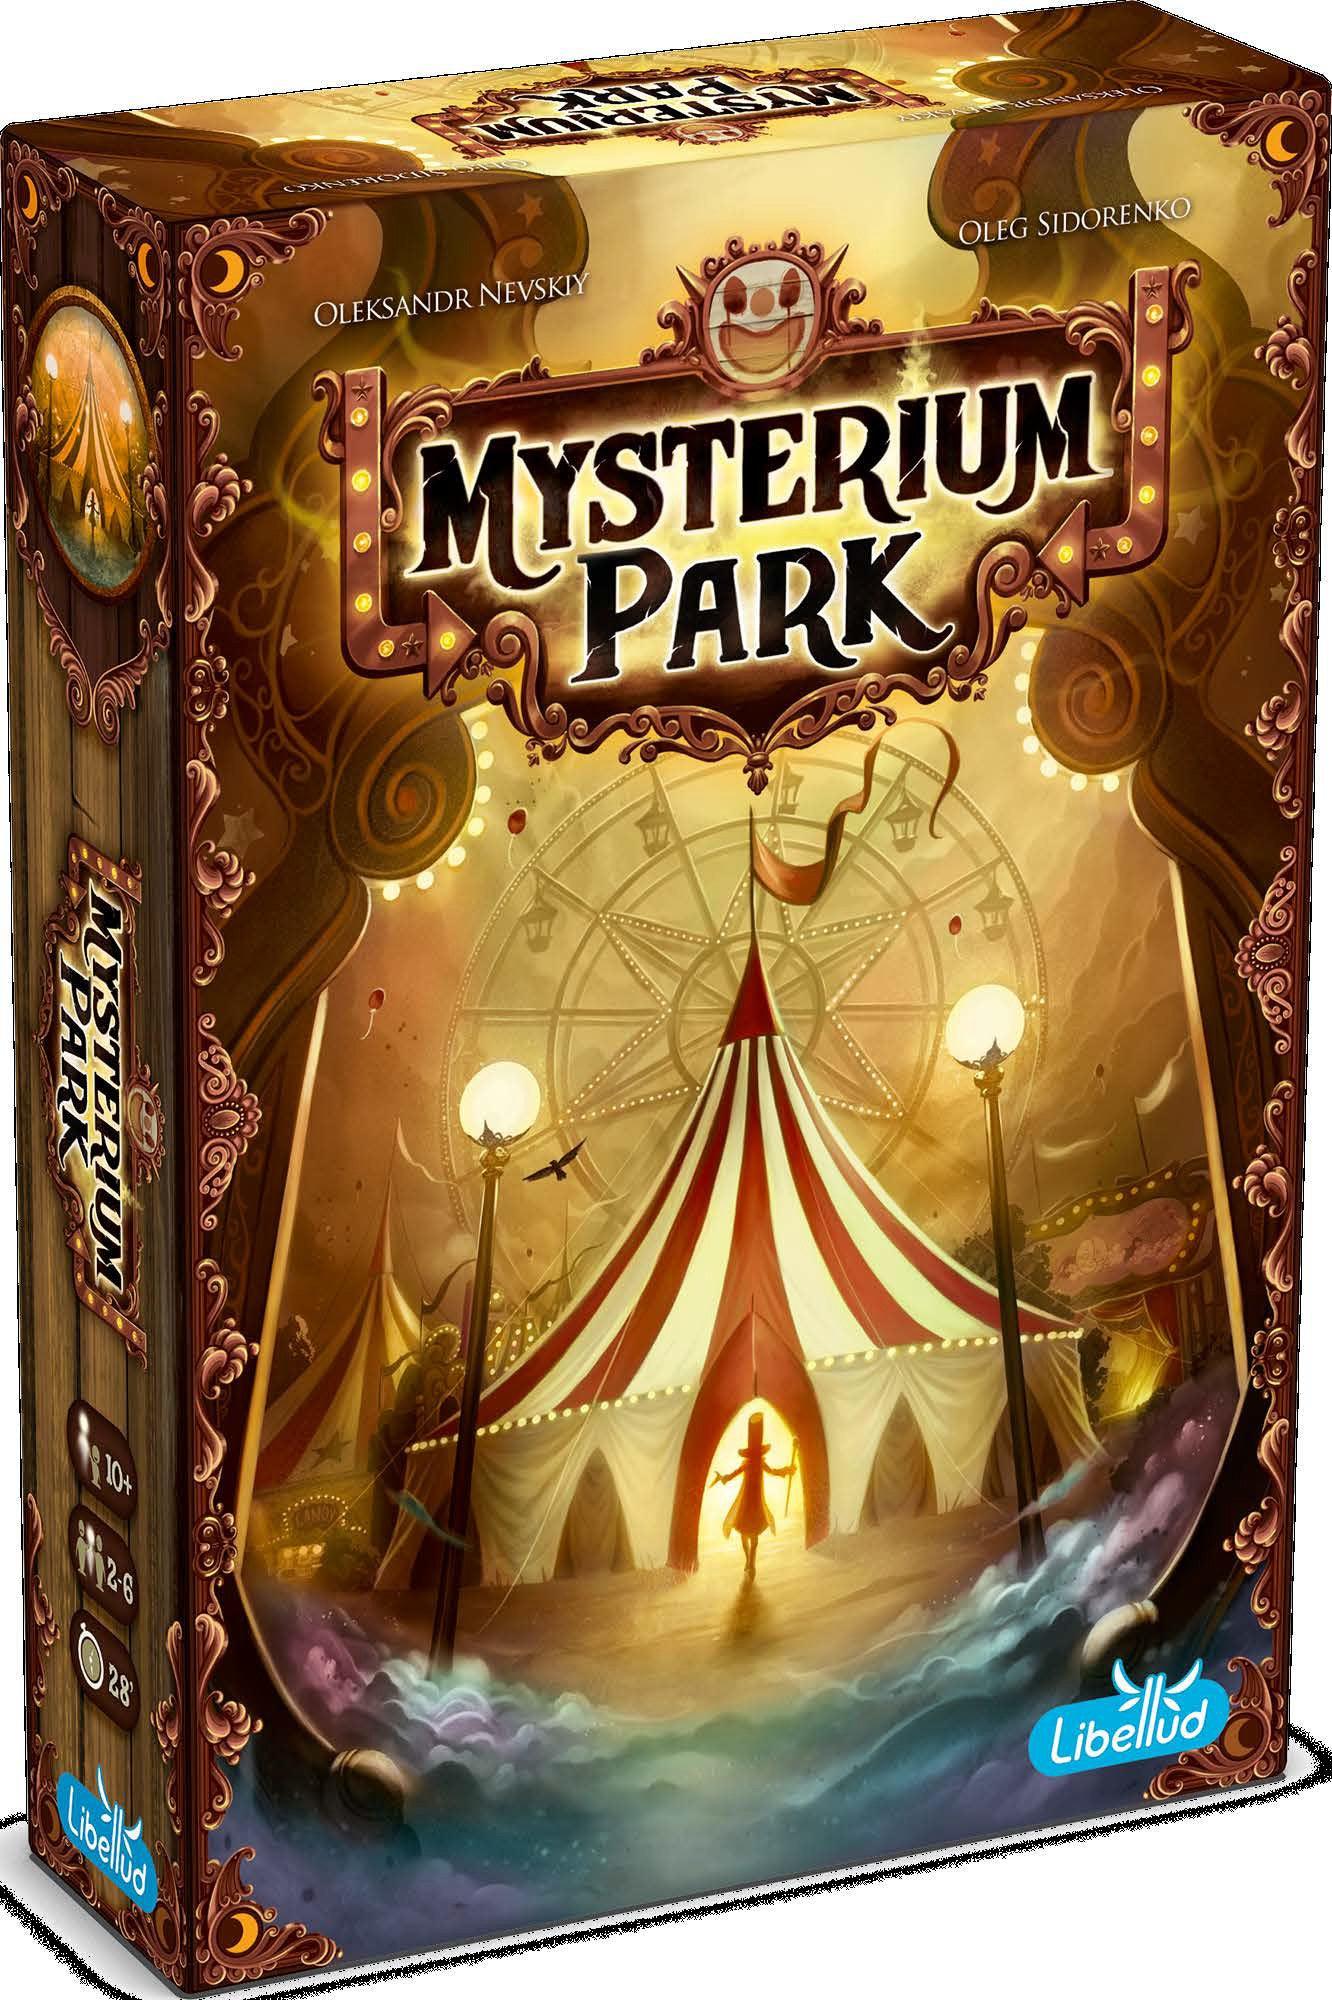 VR-85309 Mysterium Park - Libellud - Titan Pop Culture